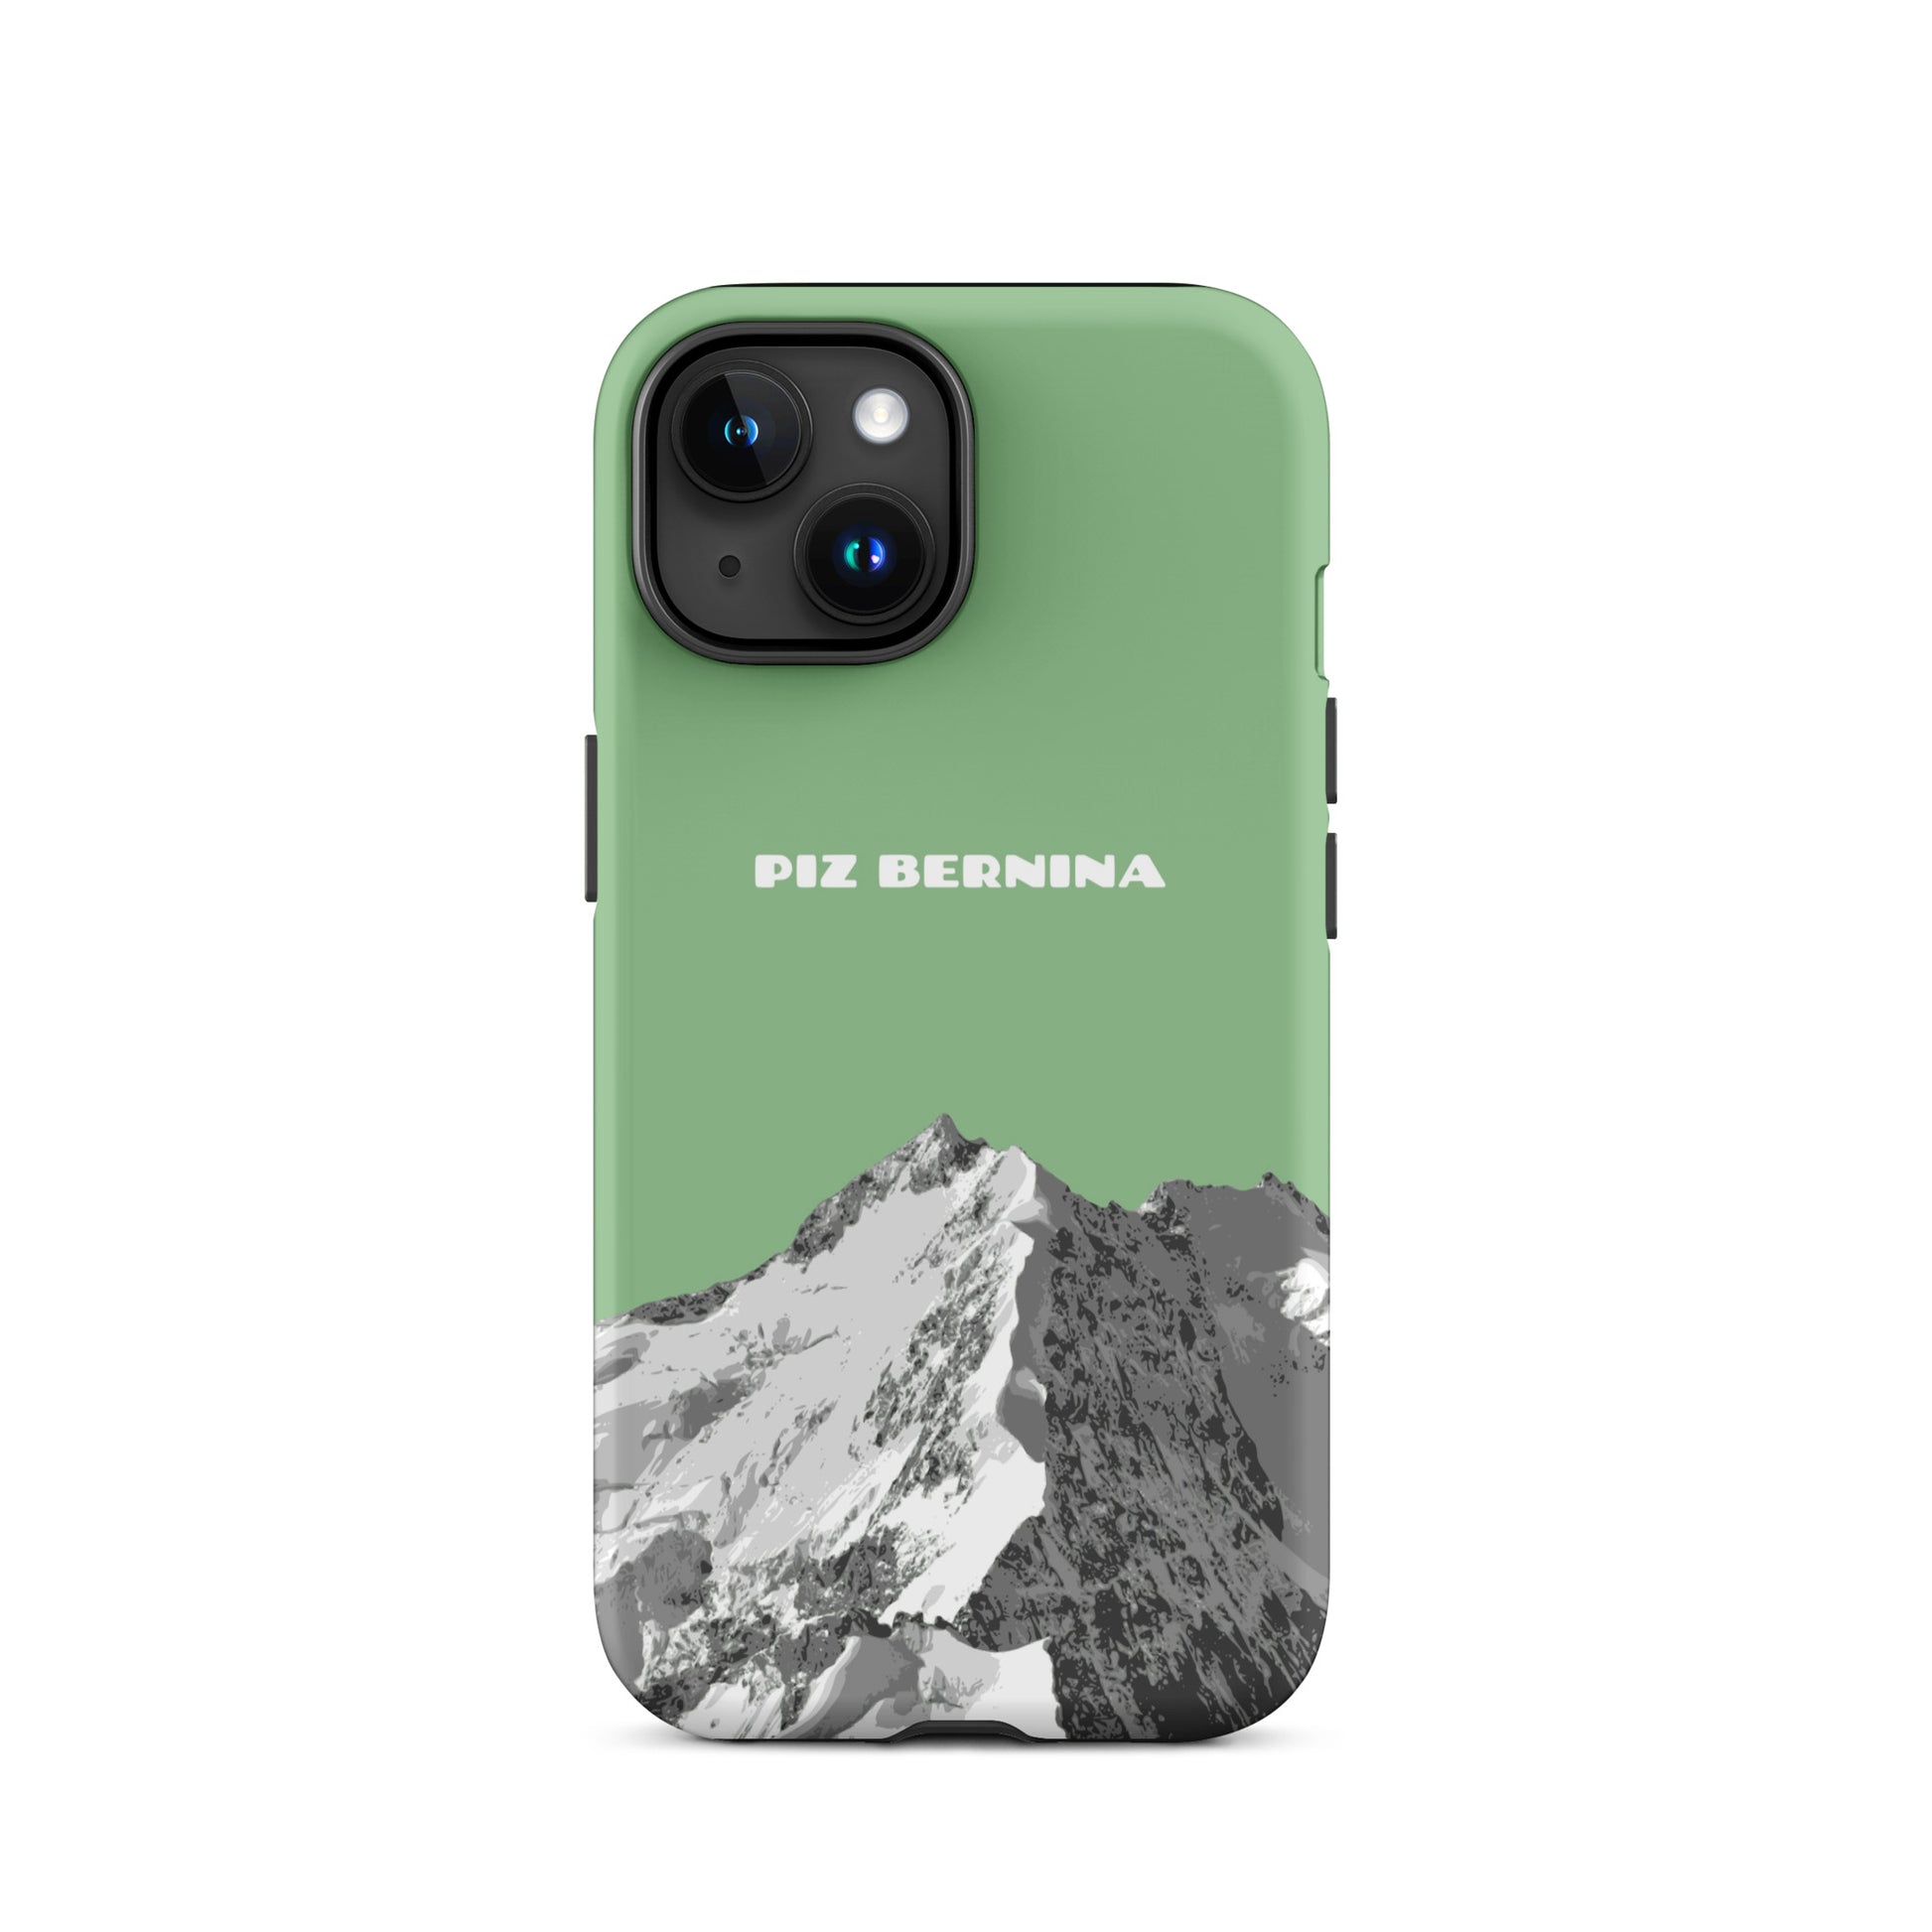 Hülle für das iPhone von Apple in der Farbe Hellgrün, dass den Piz Bernina in Graubünden zeigt.